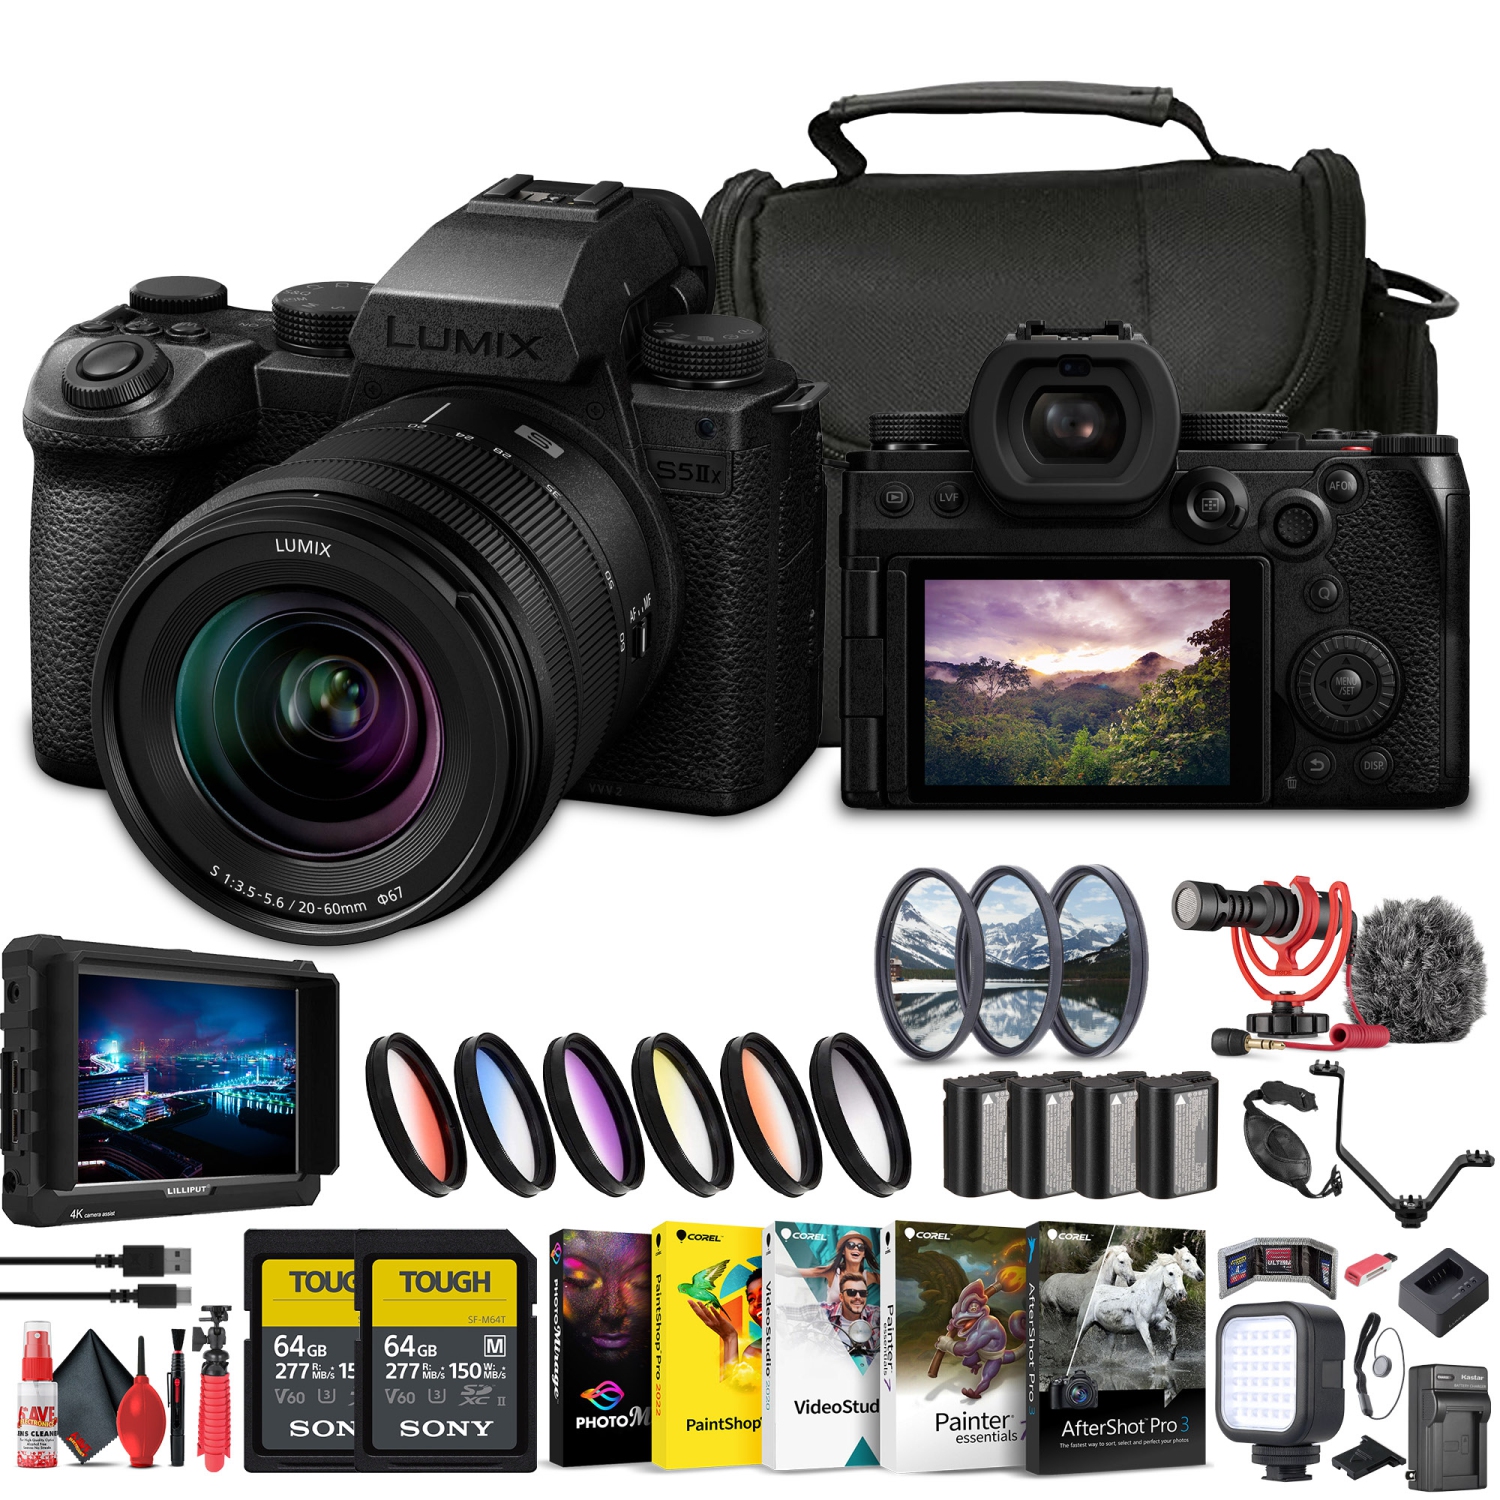 Panasonic Lumix S5 IIX Mirrorless Camera with 20-60mm Lens + 4K Monitor + More